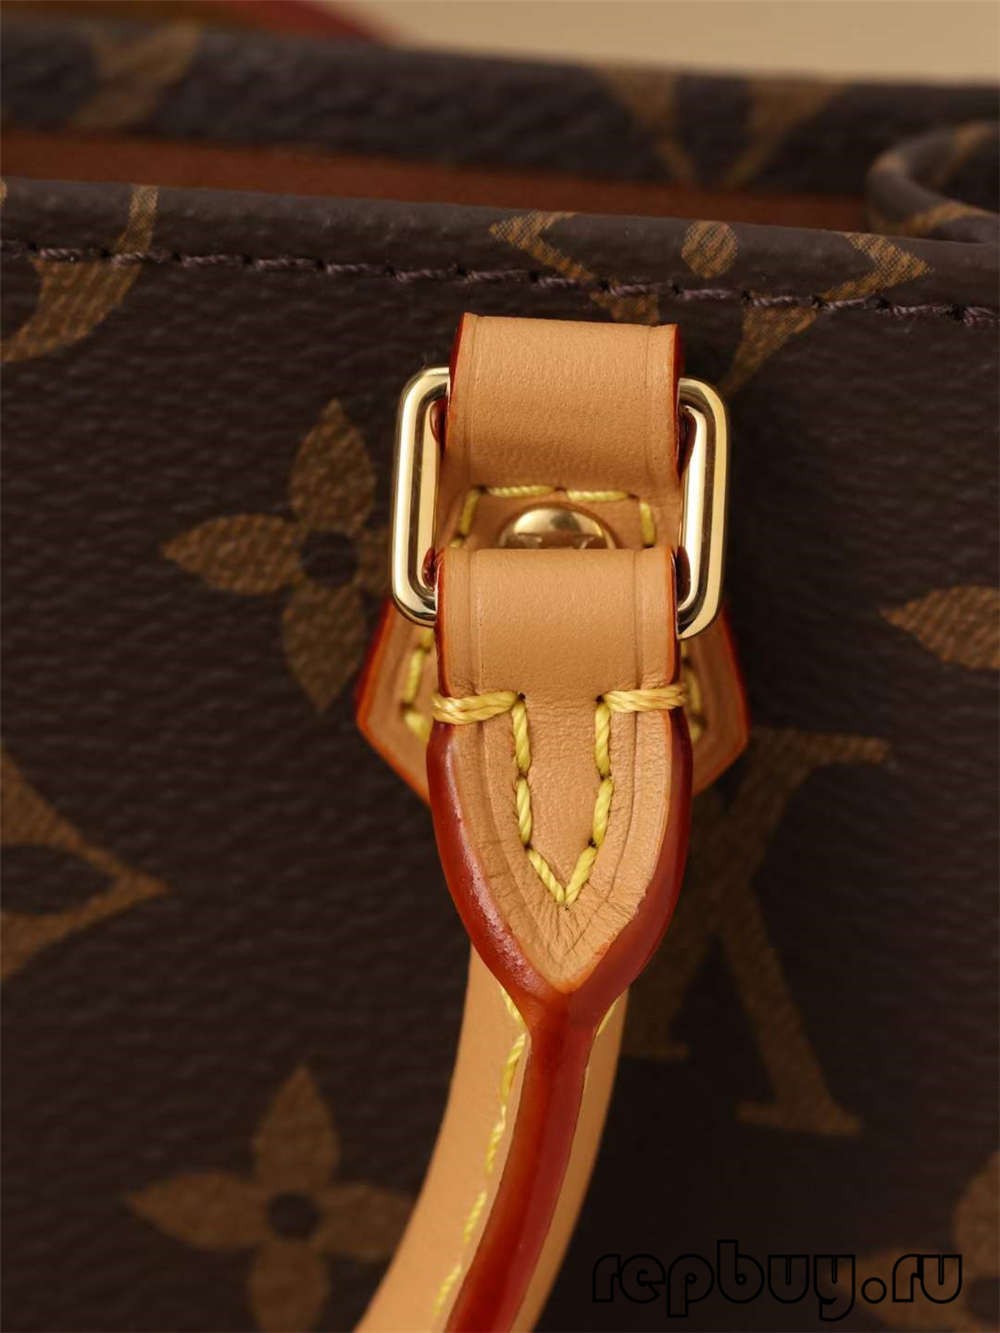 Louis Vuitton M69442 Petit Sac Plat sacs réplique de qualité supérieure (mise à jour 2022)-Best Quality Fake Louis Vuitton Bag Online Store, Replica designer bag ru